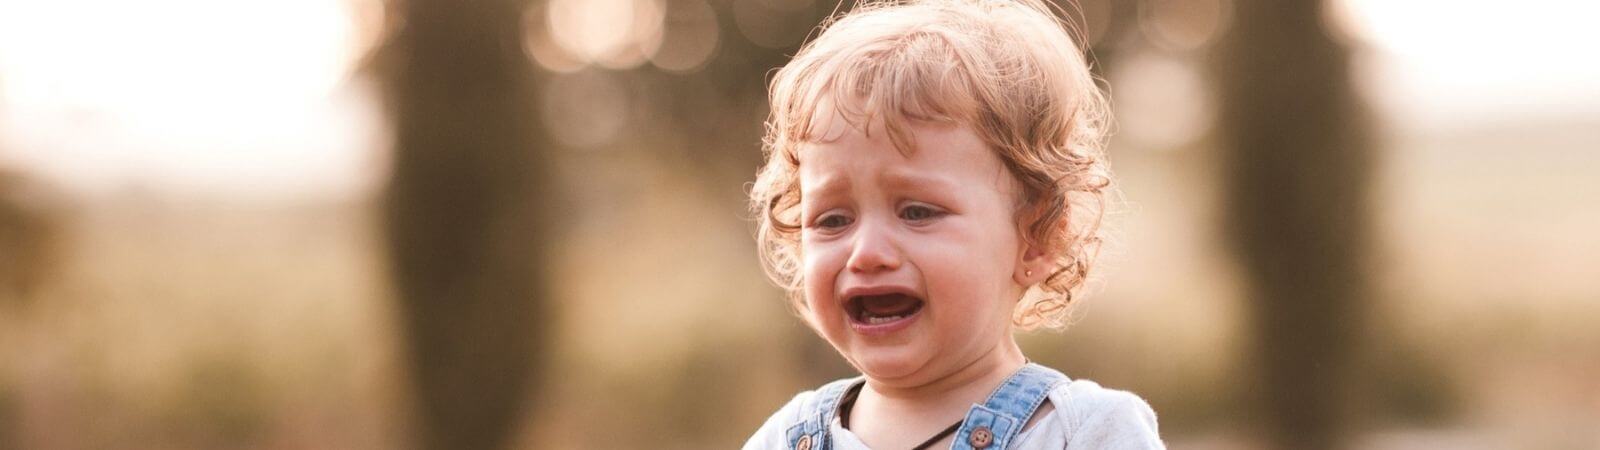 Bunt dwulatka – smutne, płaczące dziecko